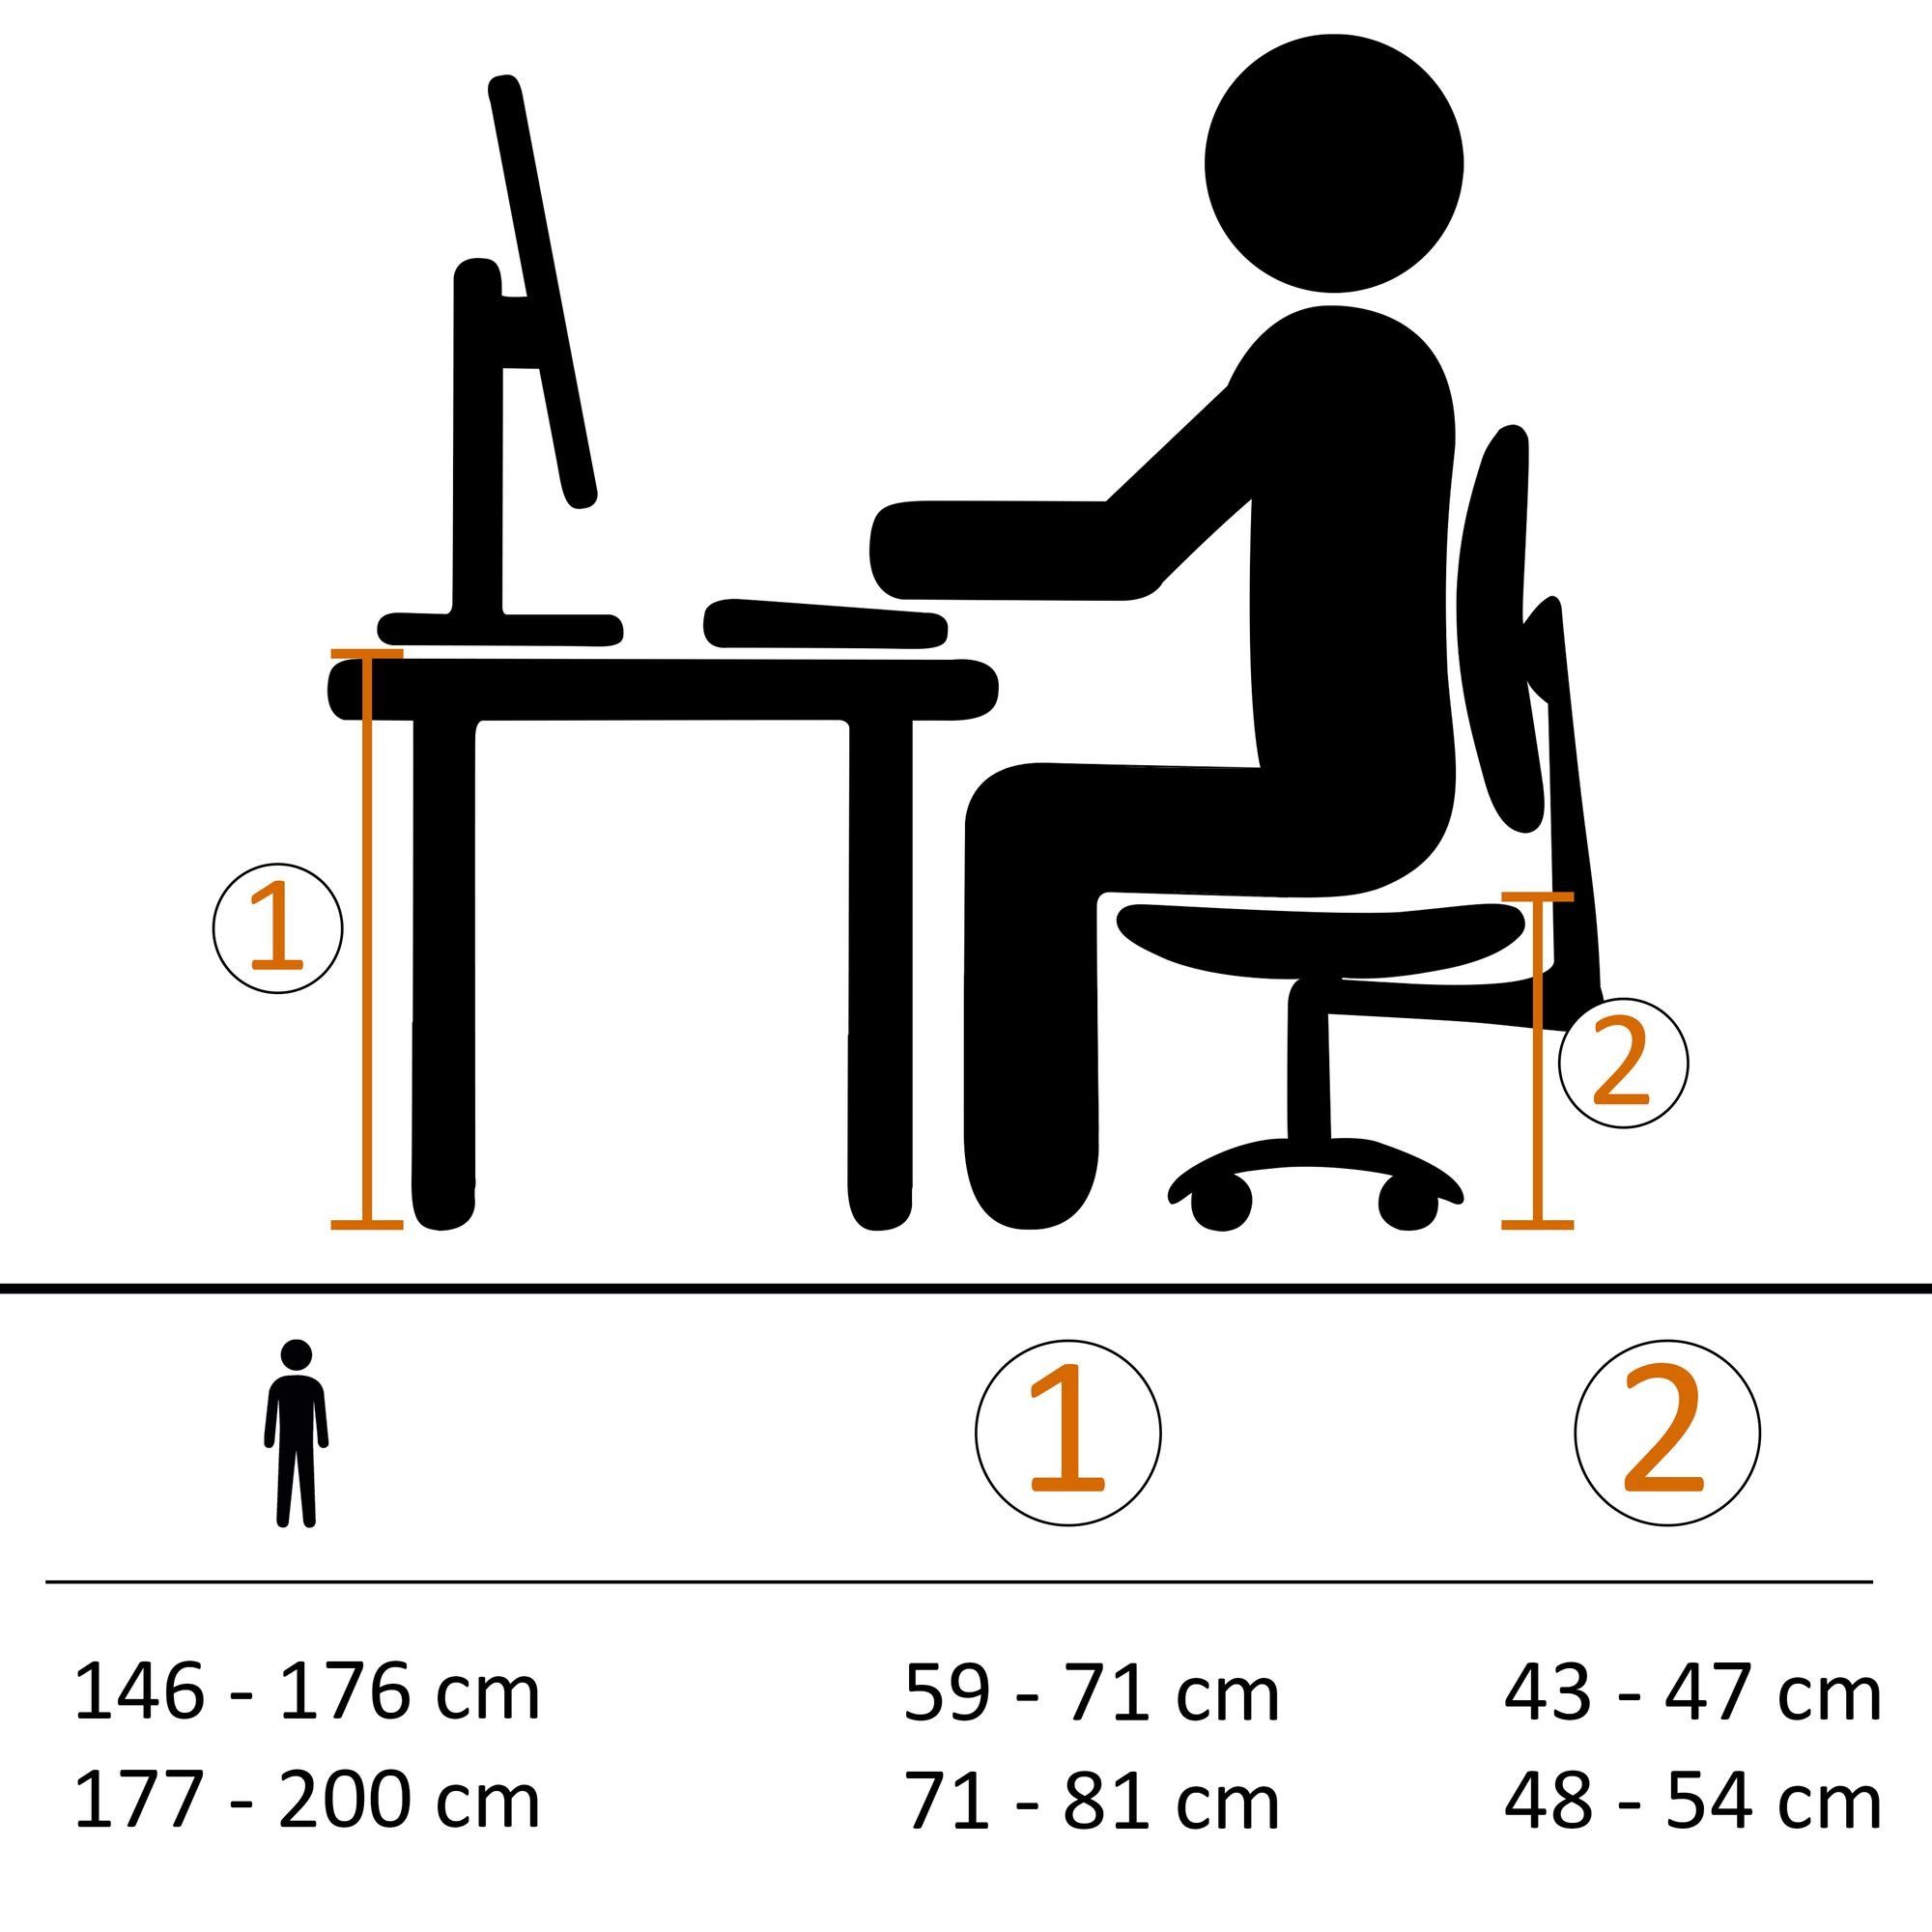 Schwarz Schreibtischstuhl (Stoff Chefsessel Drehstuhl, Amstyle Jeans-Optik kg), 120 Design Bürodrehstuhl SPM1.409 bis Drehbar